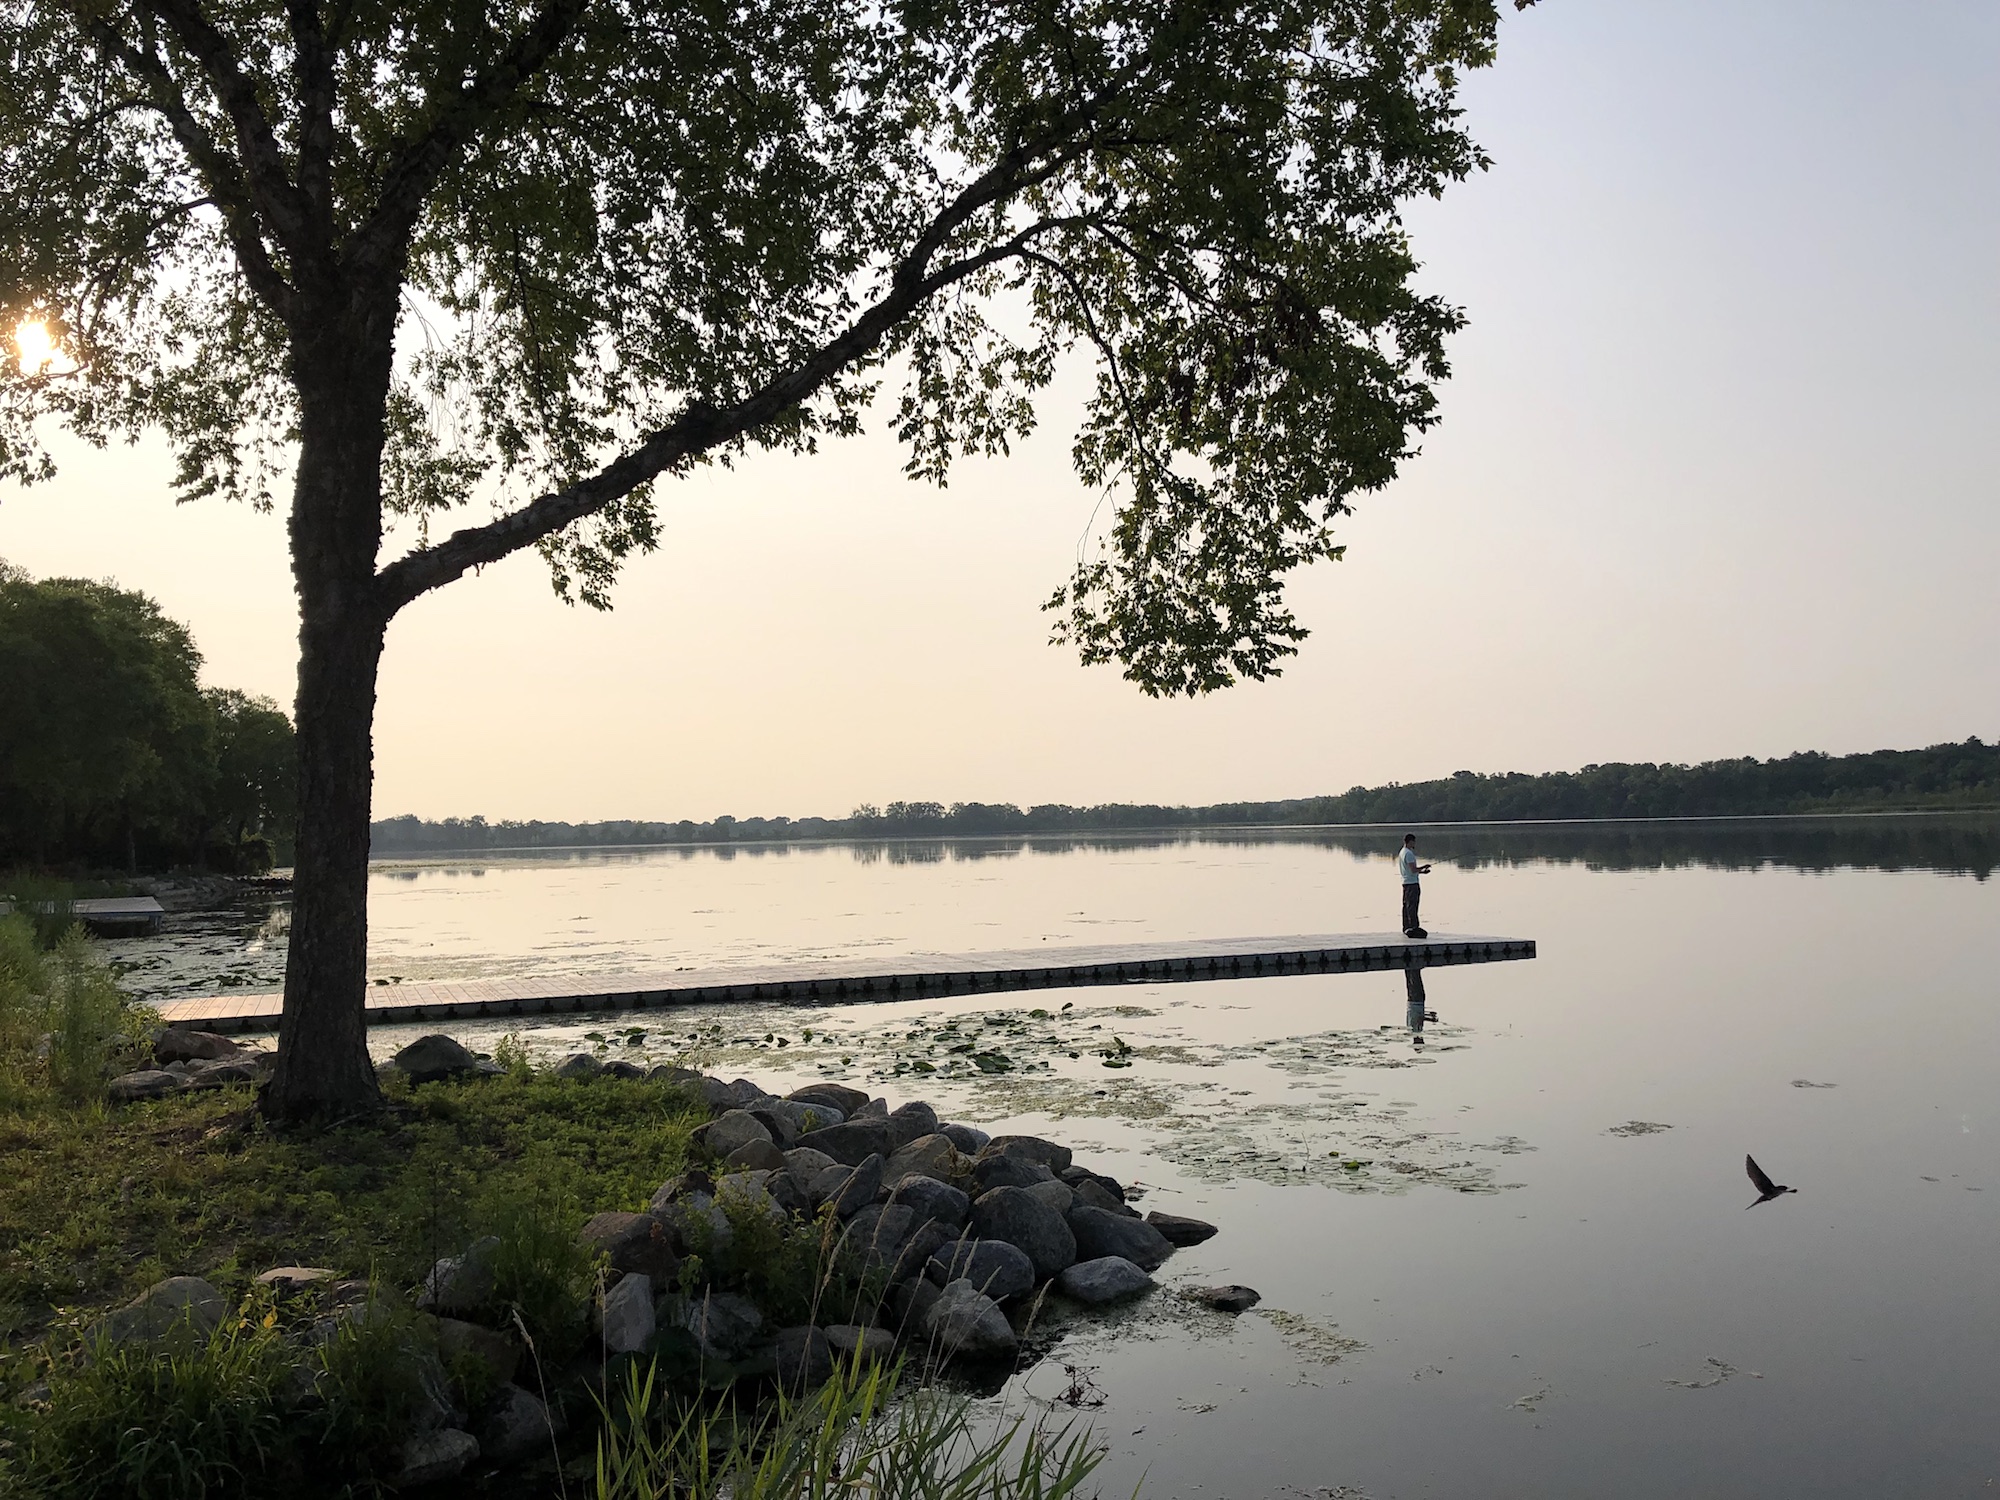 Lake Wingra on July 24, 2019.